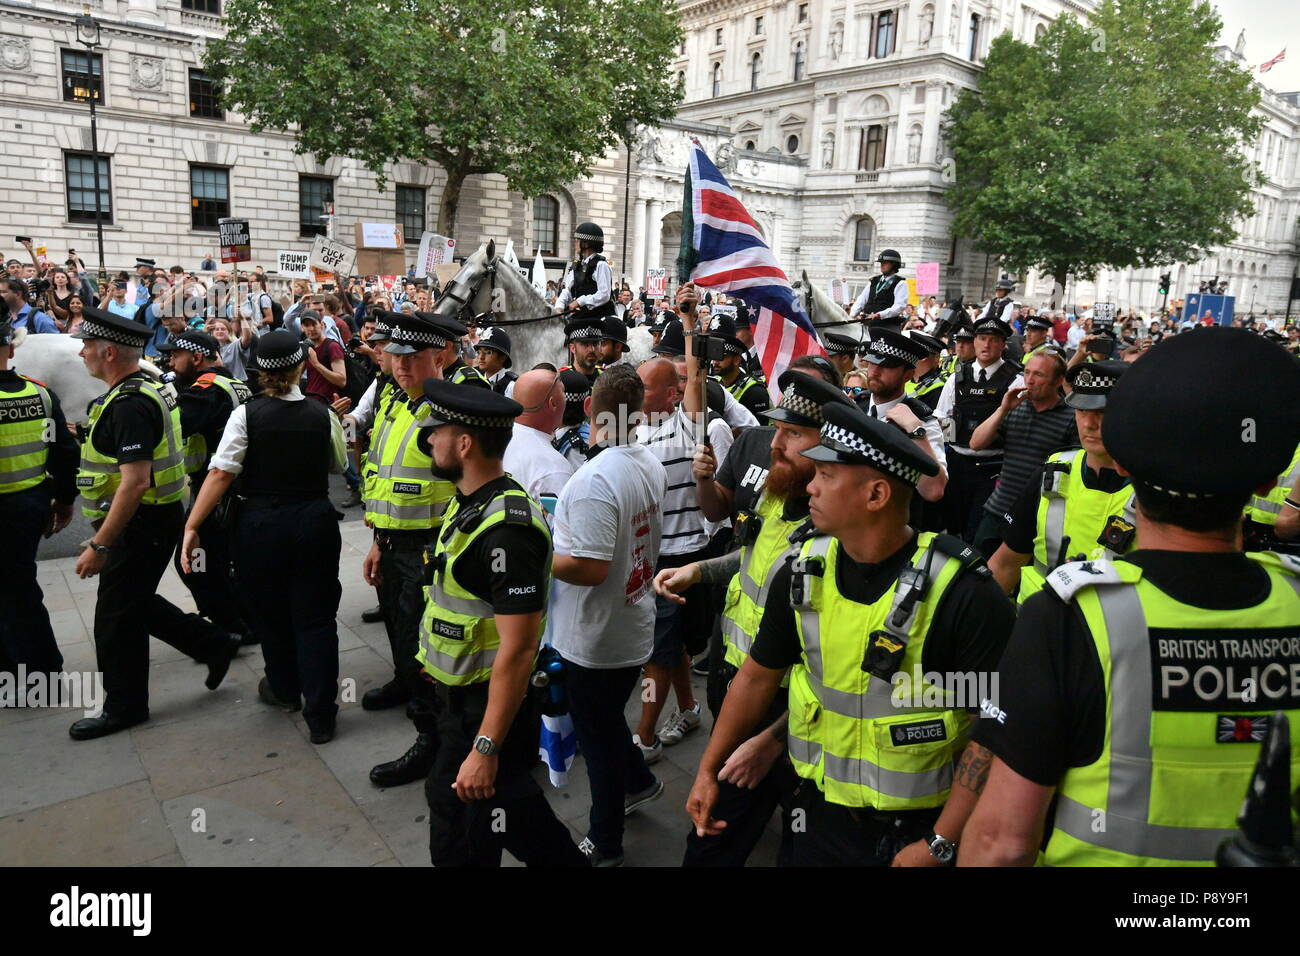 Les membres de la Ligue de défense anglaise sont entourés par la police et sont escortés à travers Westminster jusqu'à la station de métro, loin des foules de manifestants anti-Trump qui s'étaient réunis à Londres pour la marche « Stop Trump ». Banque D'Images